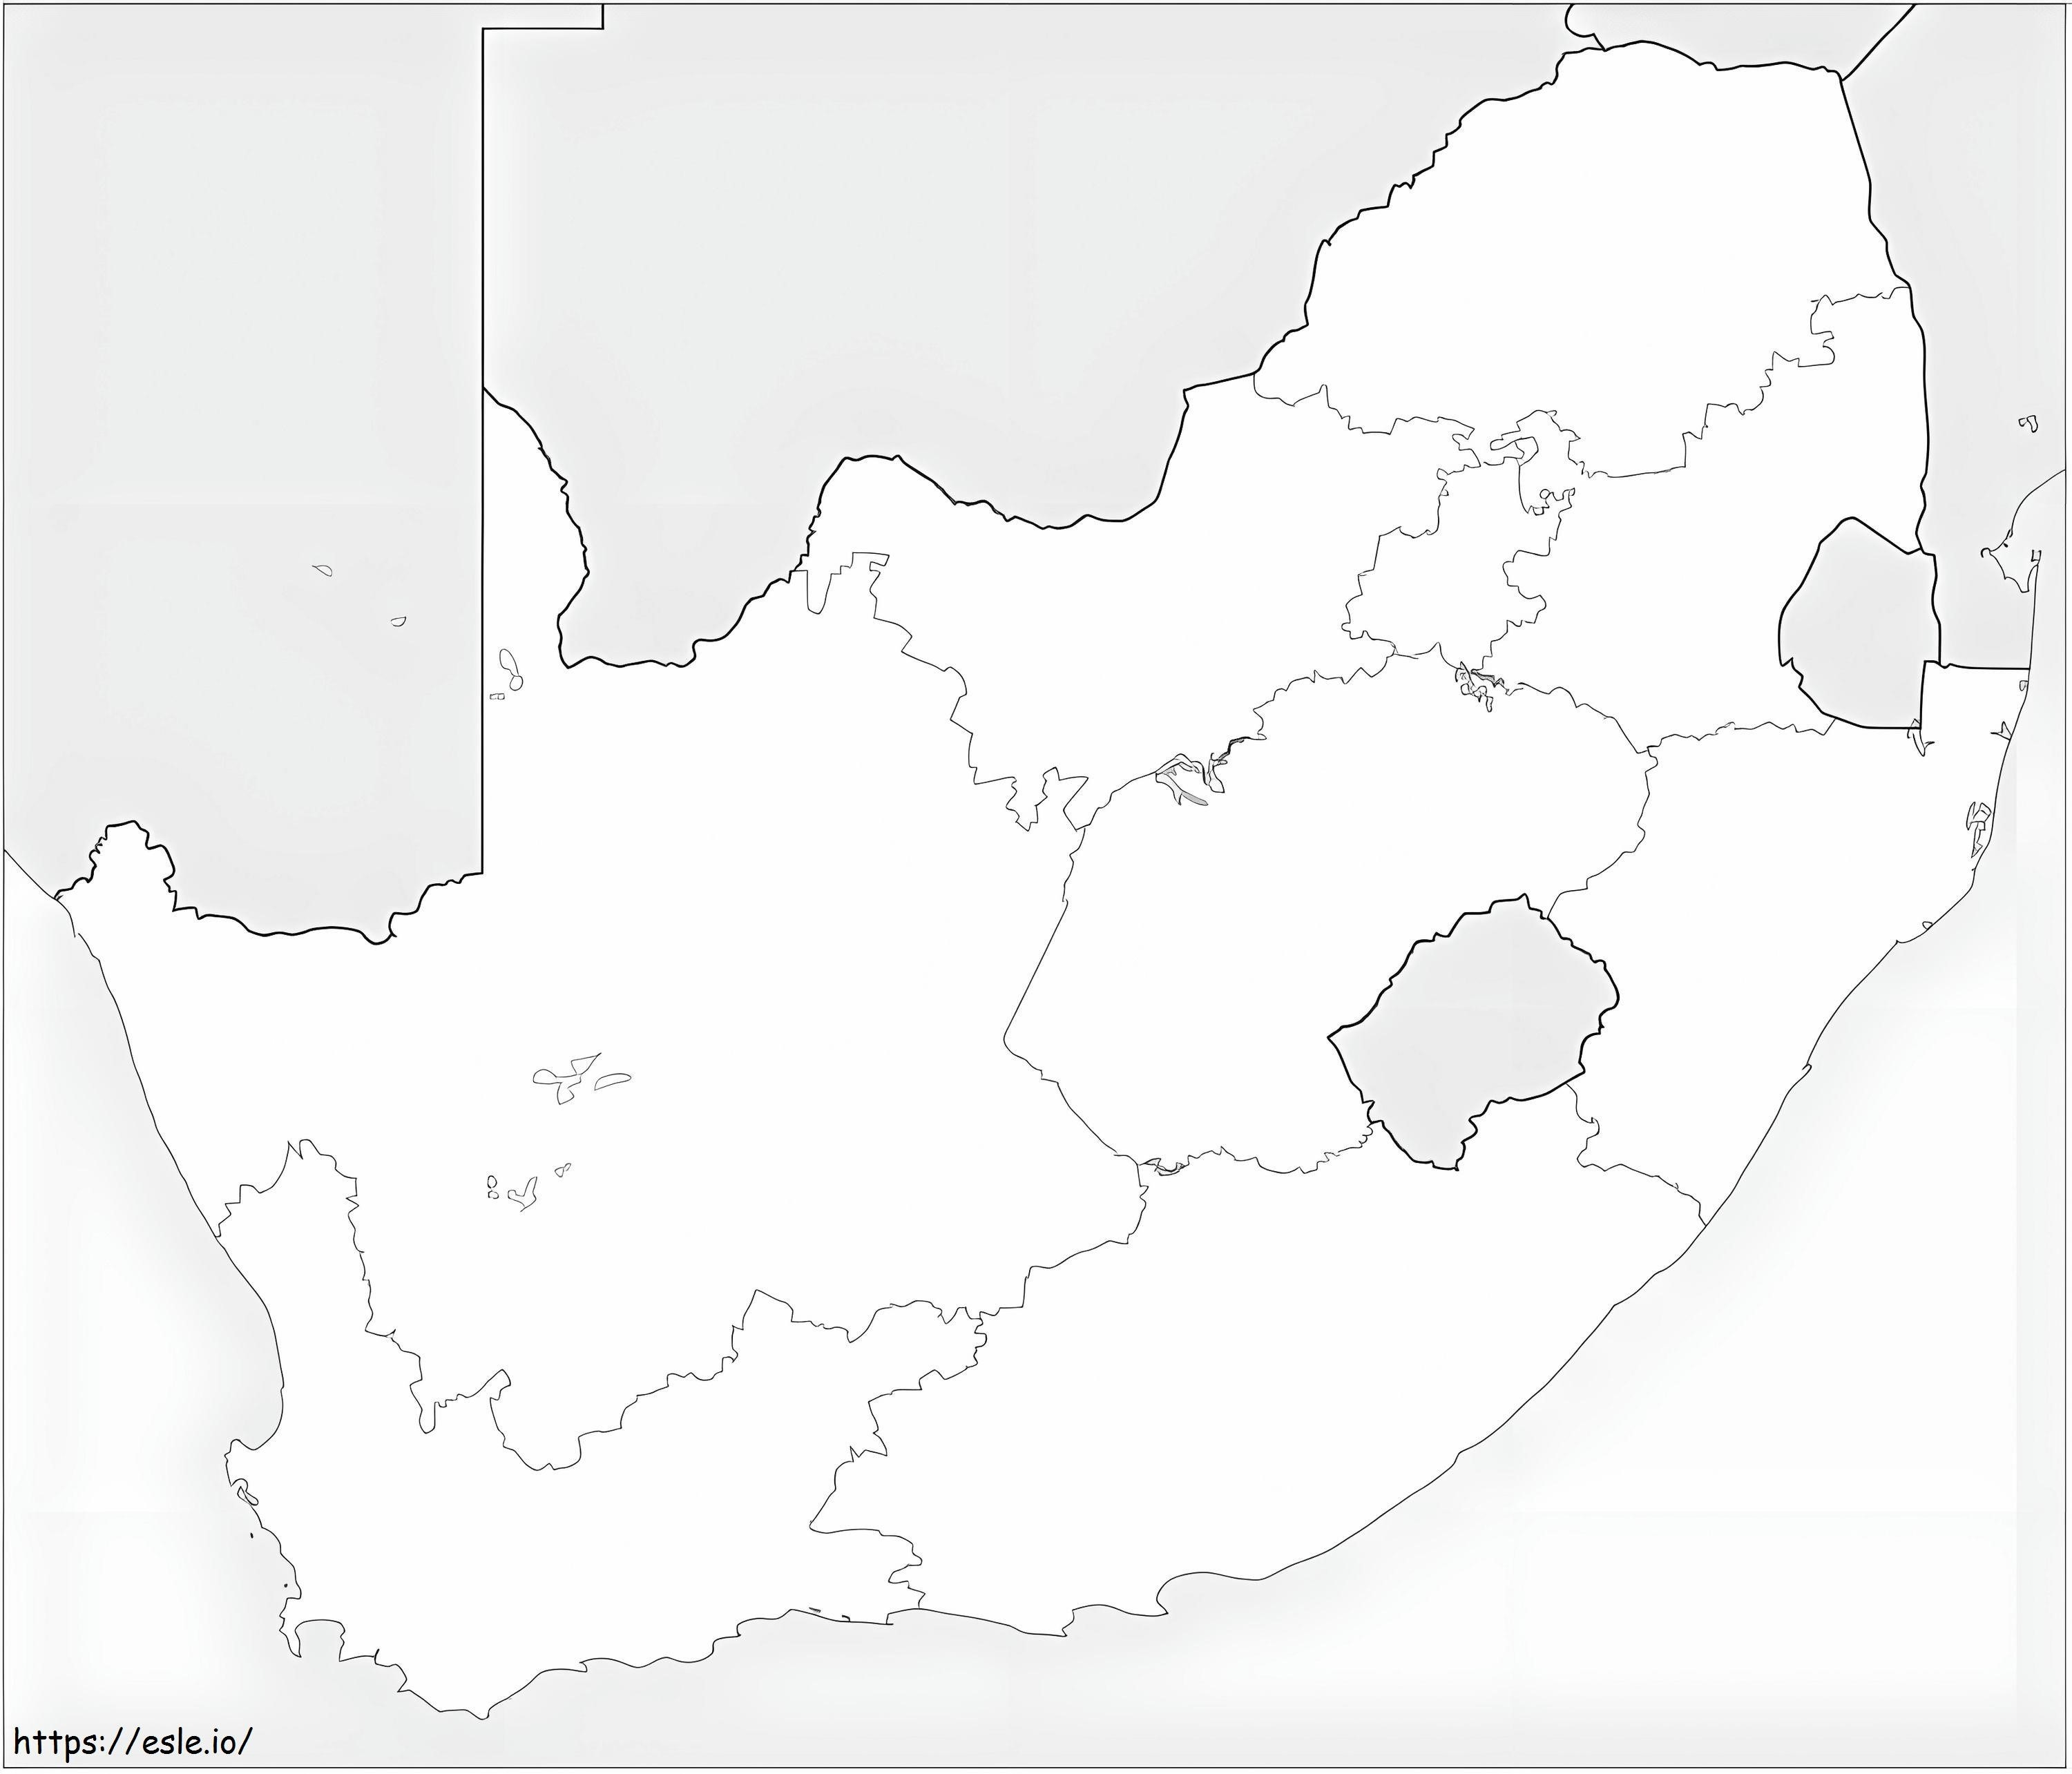 Mappa del Sud Africa da colorare